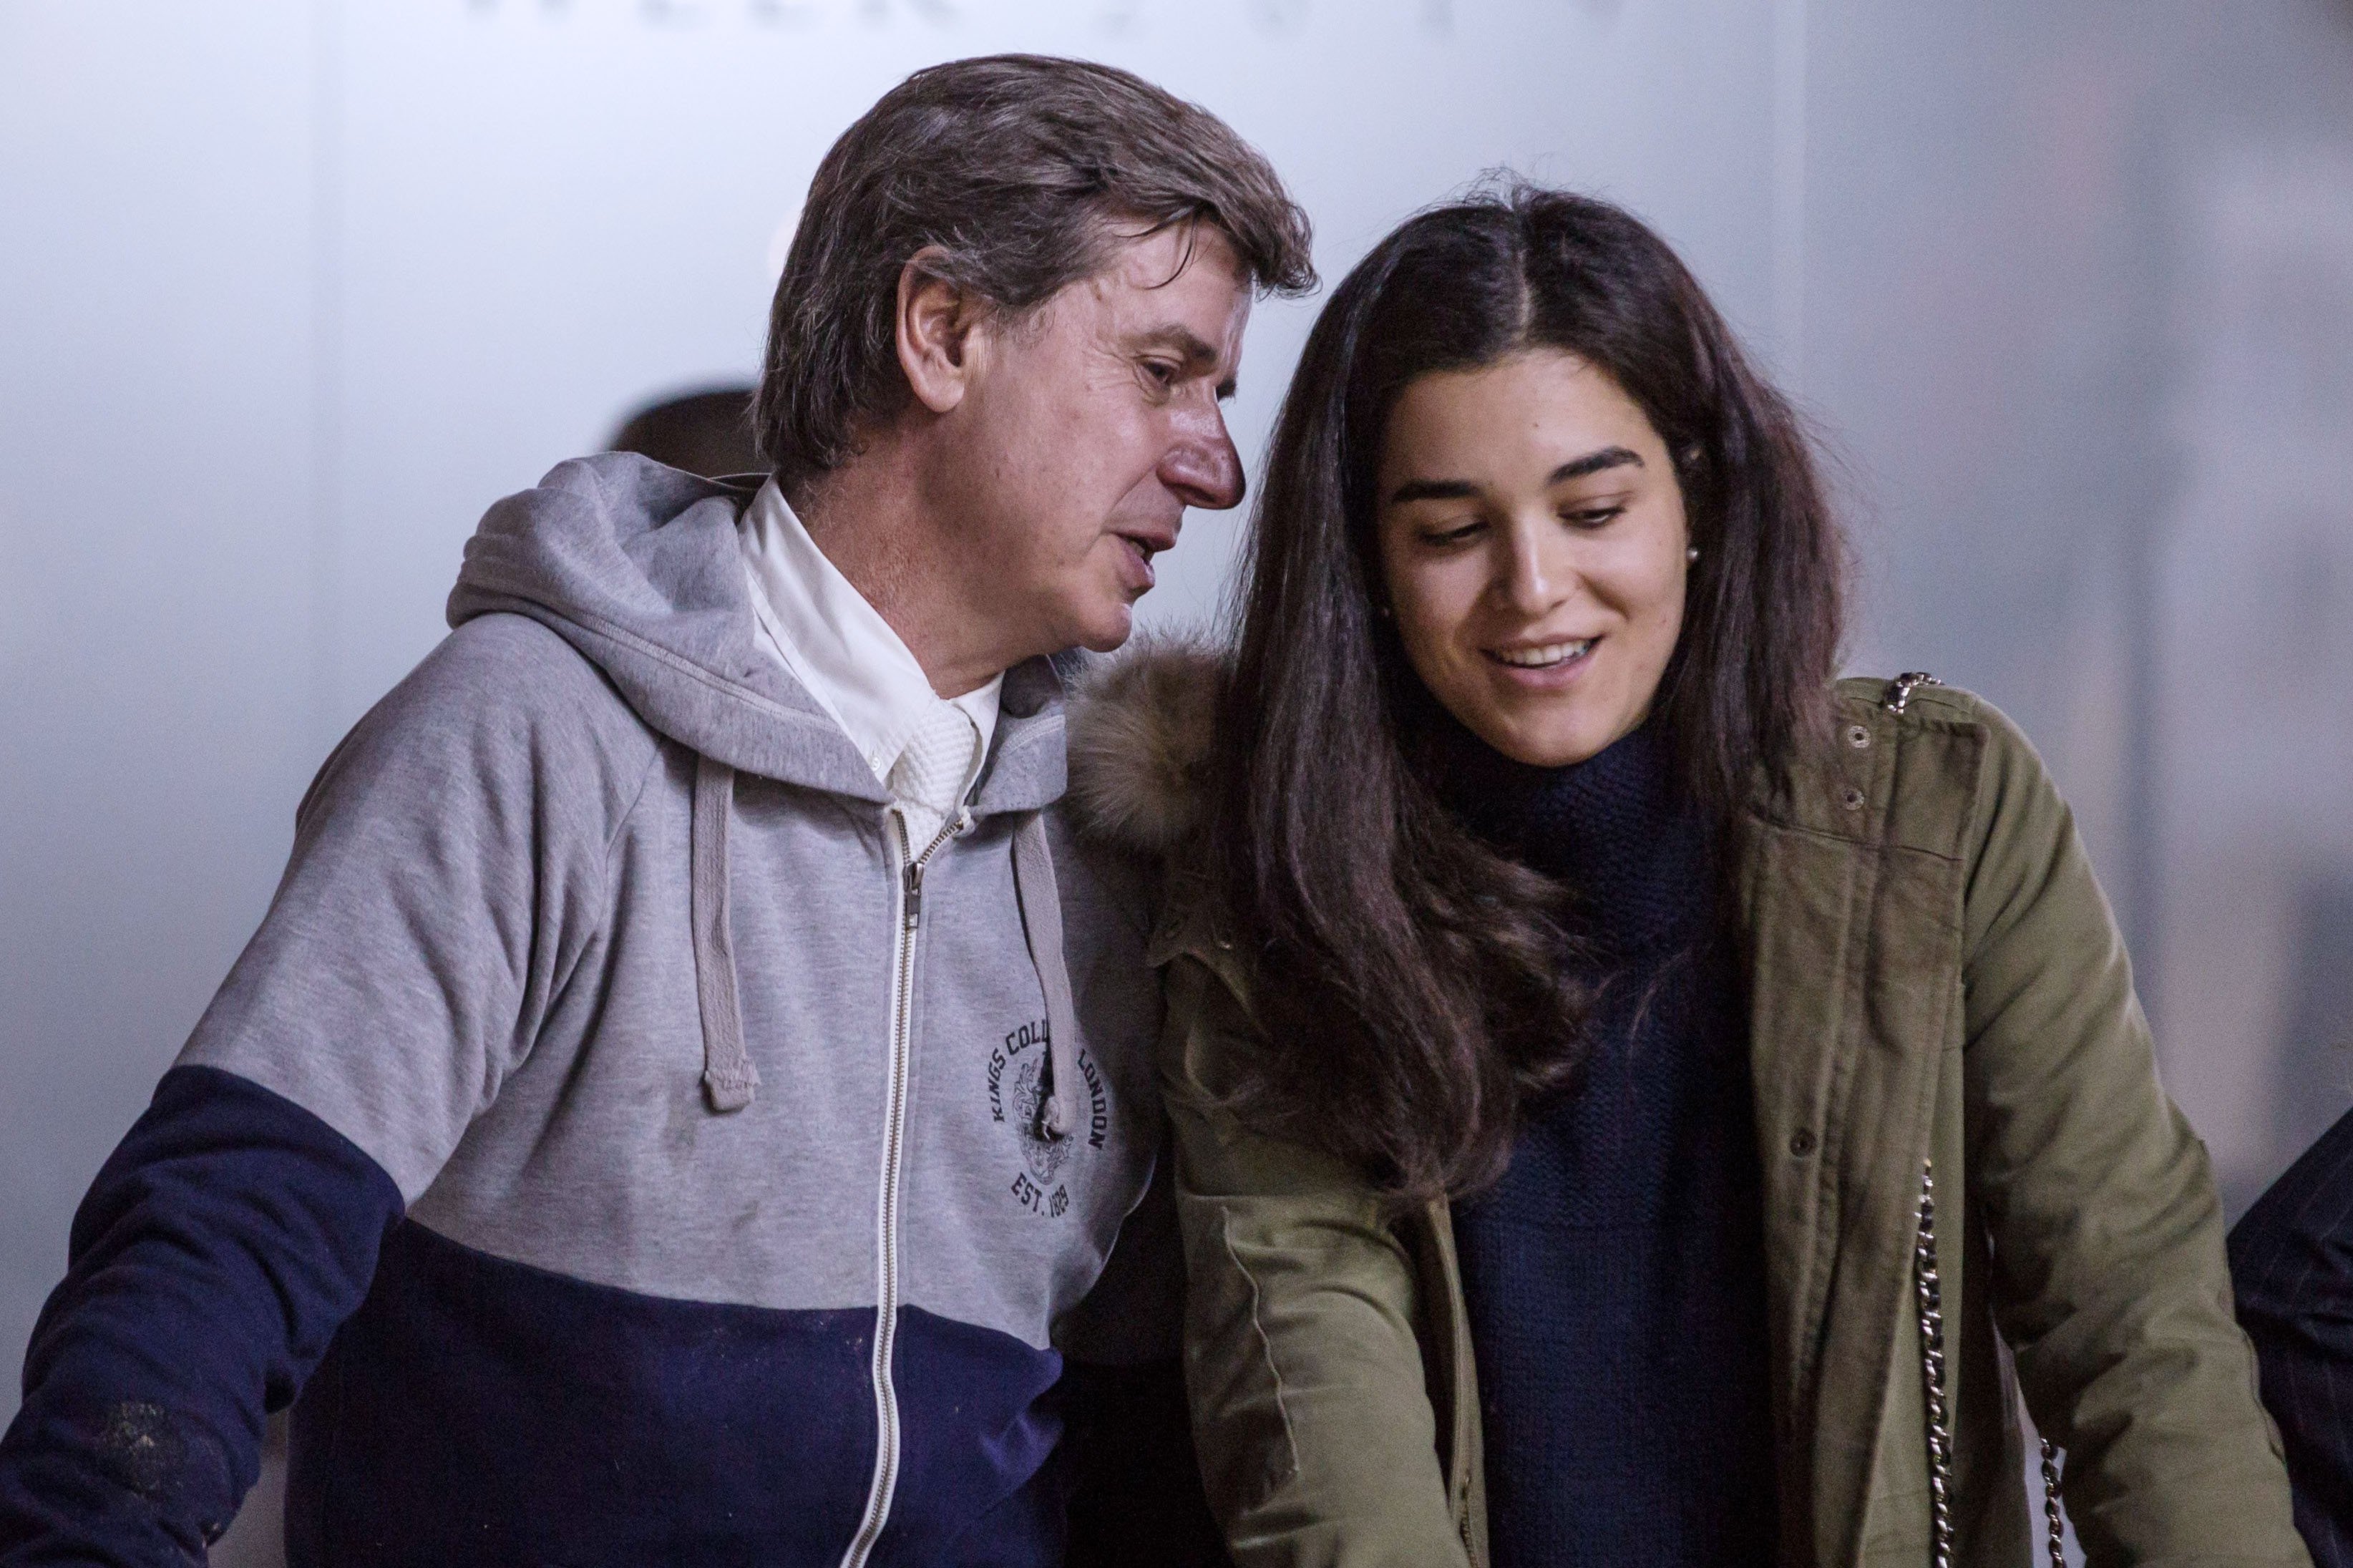 Cayetano Martínez de Irujo y Bárbara Mirjan en diciembre de 2019 en Madrid. | Foto: Getty Images